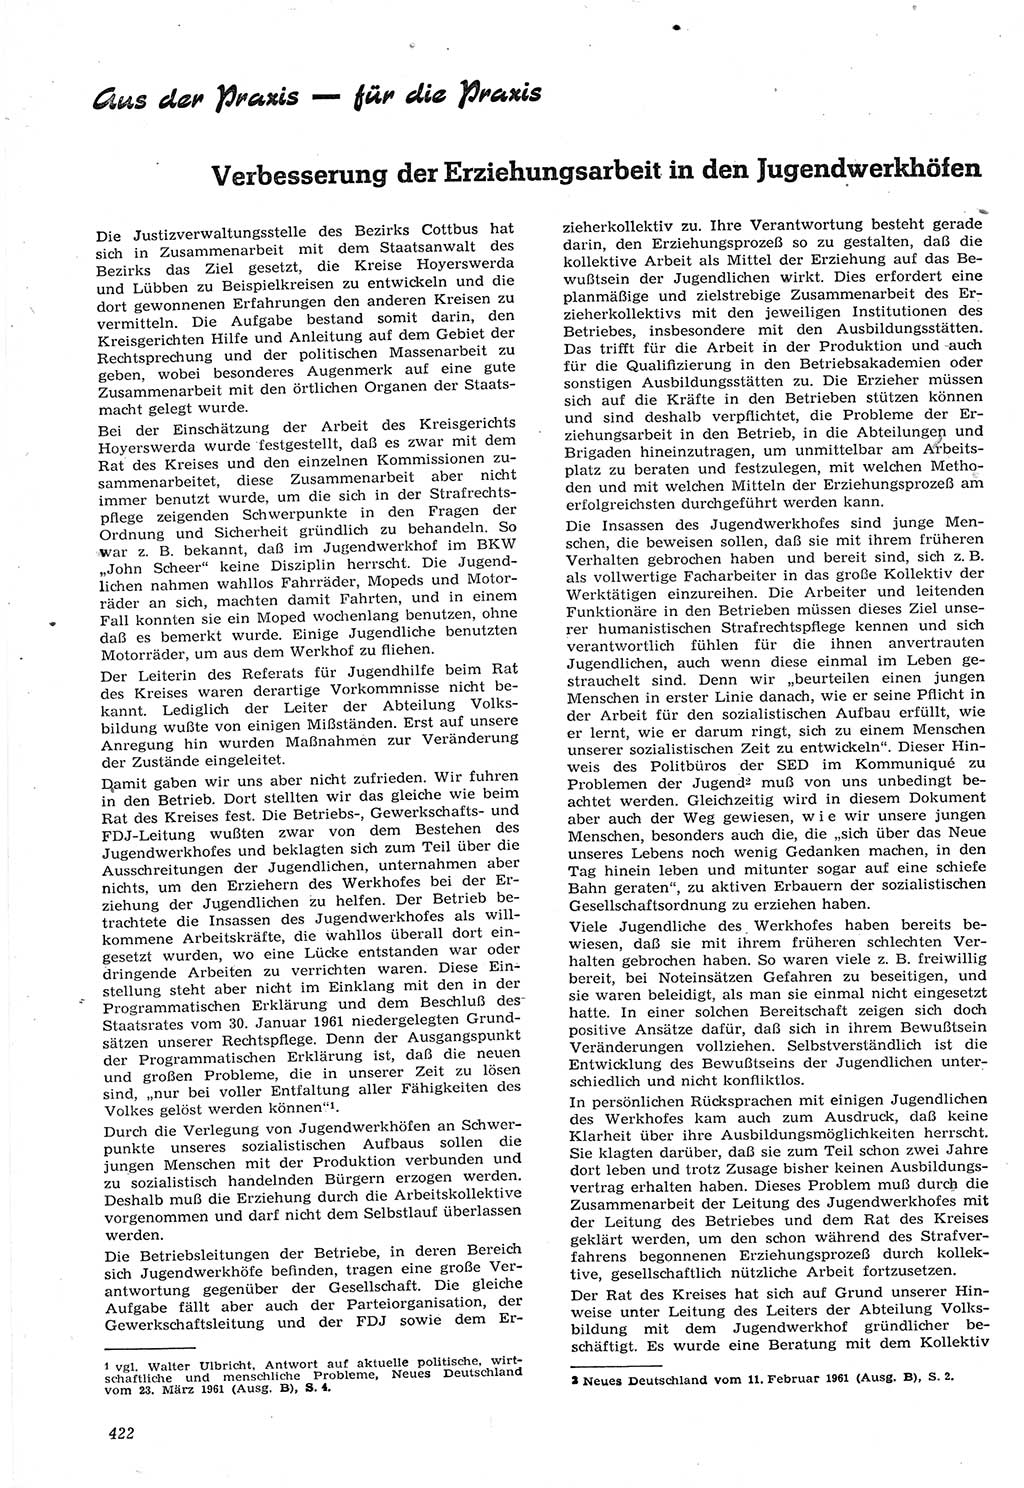 Neue Justiz (NJ), Zeitschrift für Recht und Rechtswissenschaft [Deutsche Demokratische Republik (DDR)], 15. Jahrgang 1961, Seite 422 (NJ DDR 1961, S. 422)